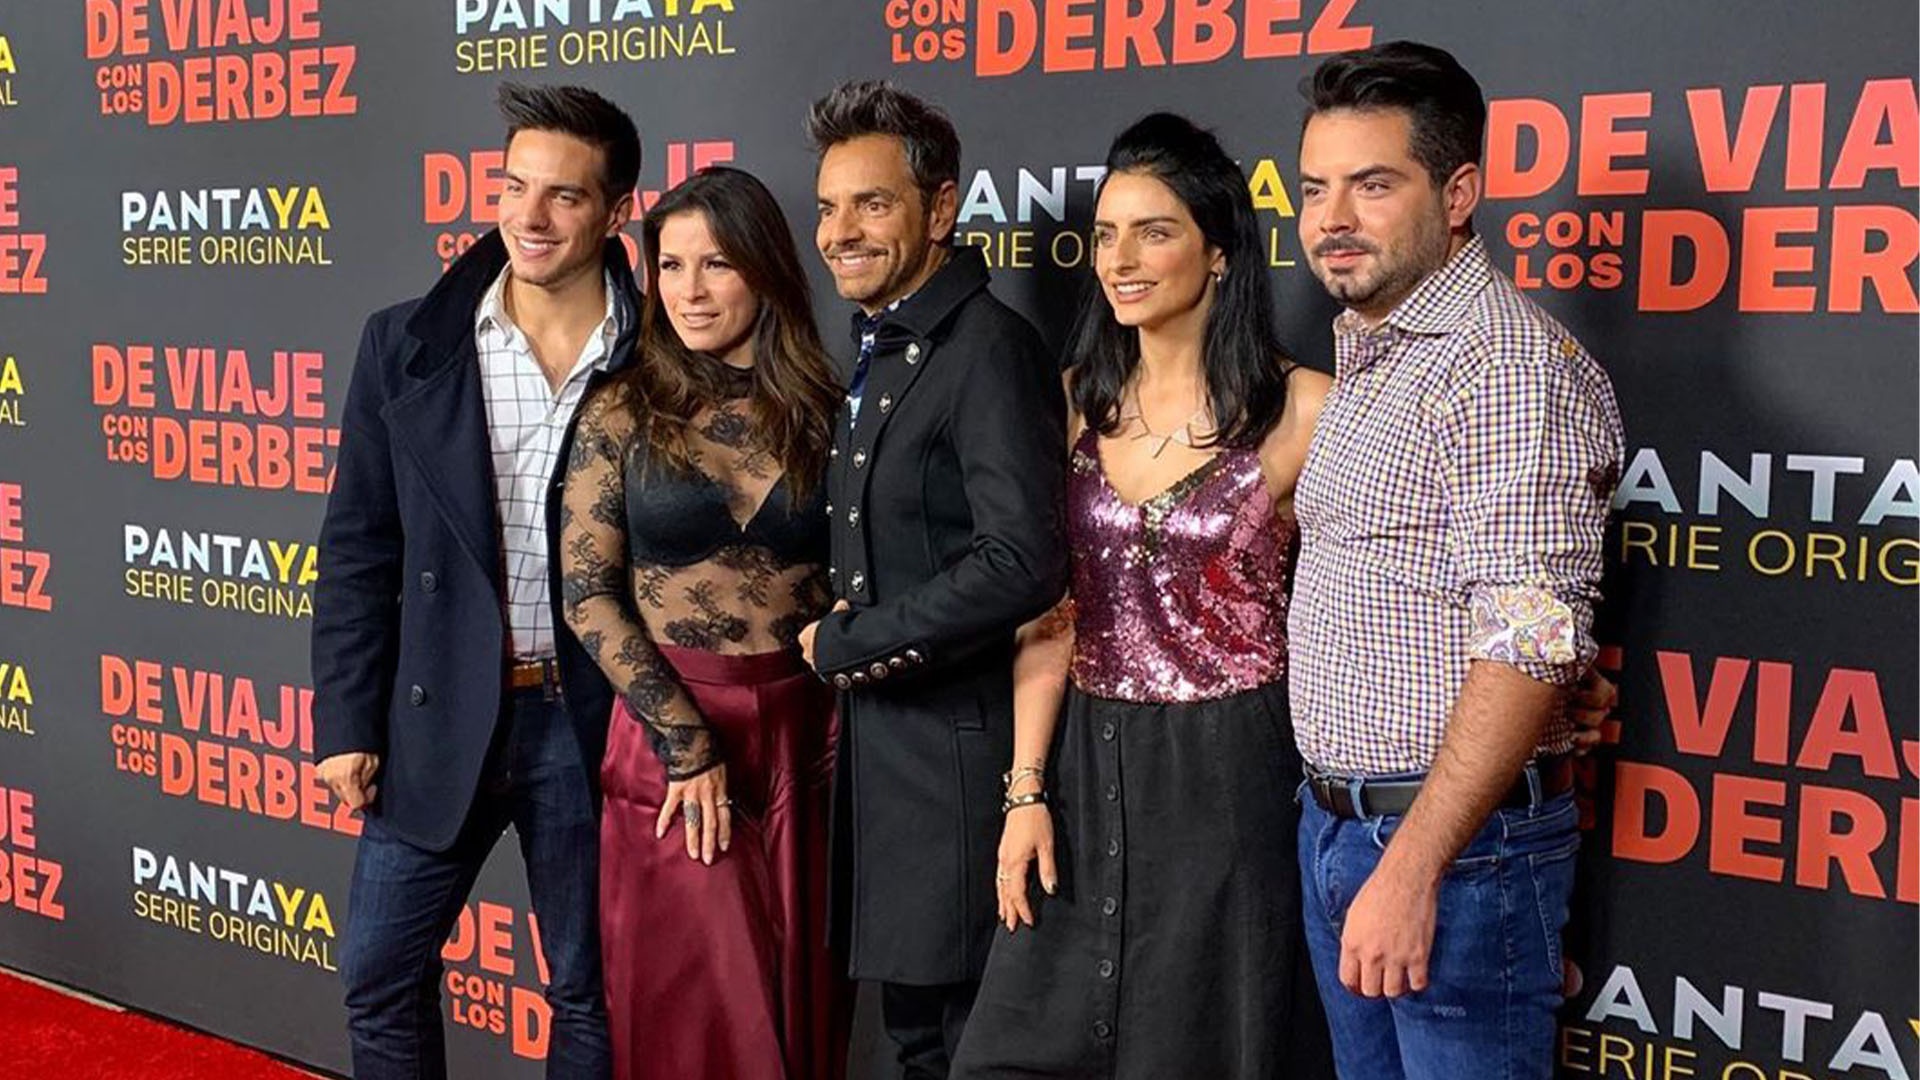 Los Derbez han incursionado en el cine, la comedia y la música (Foto: Instagram@ederbez)